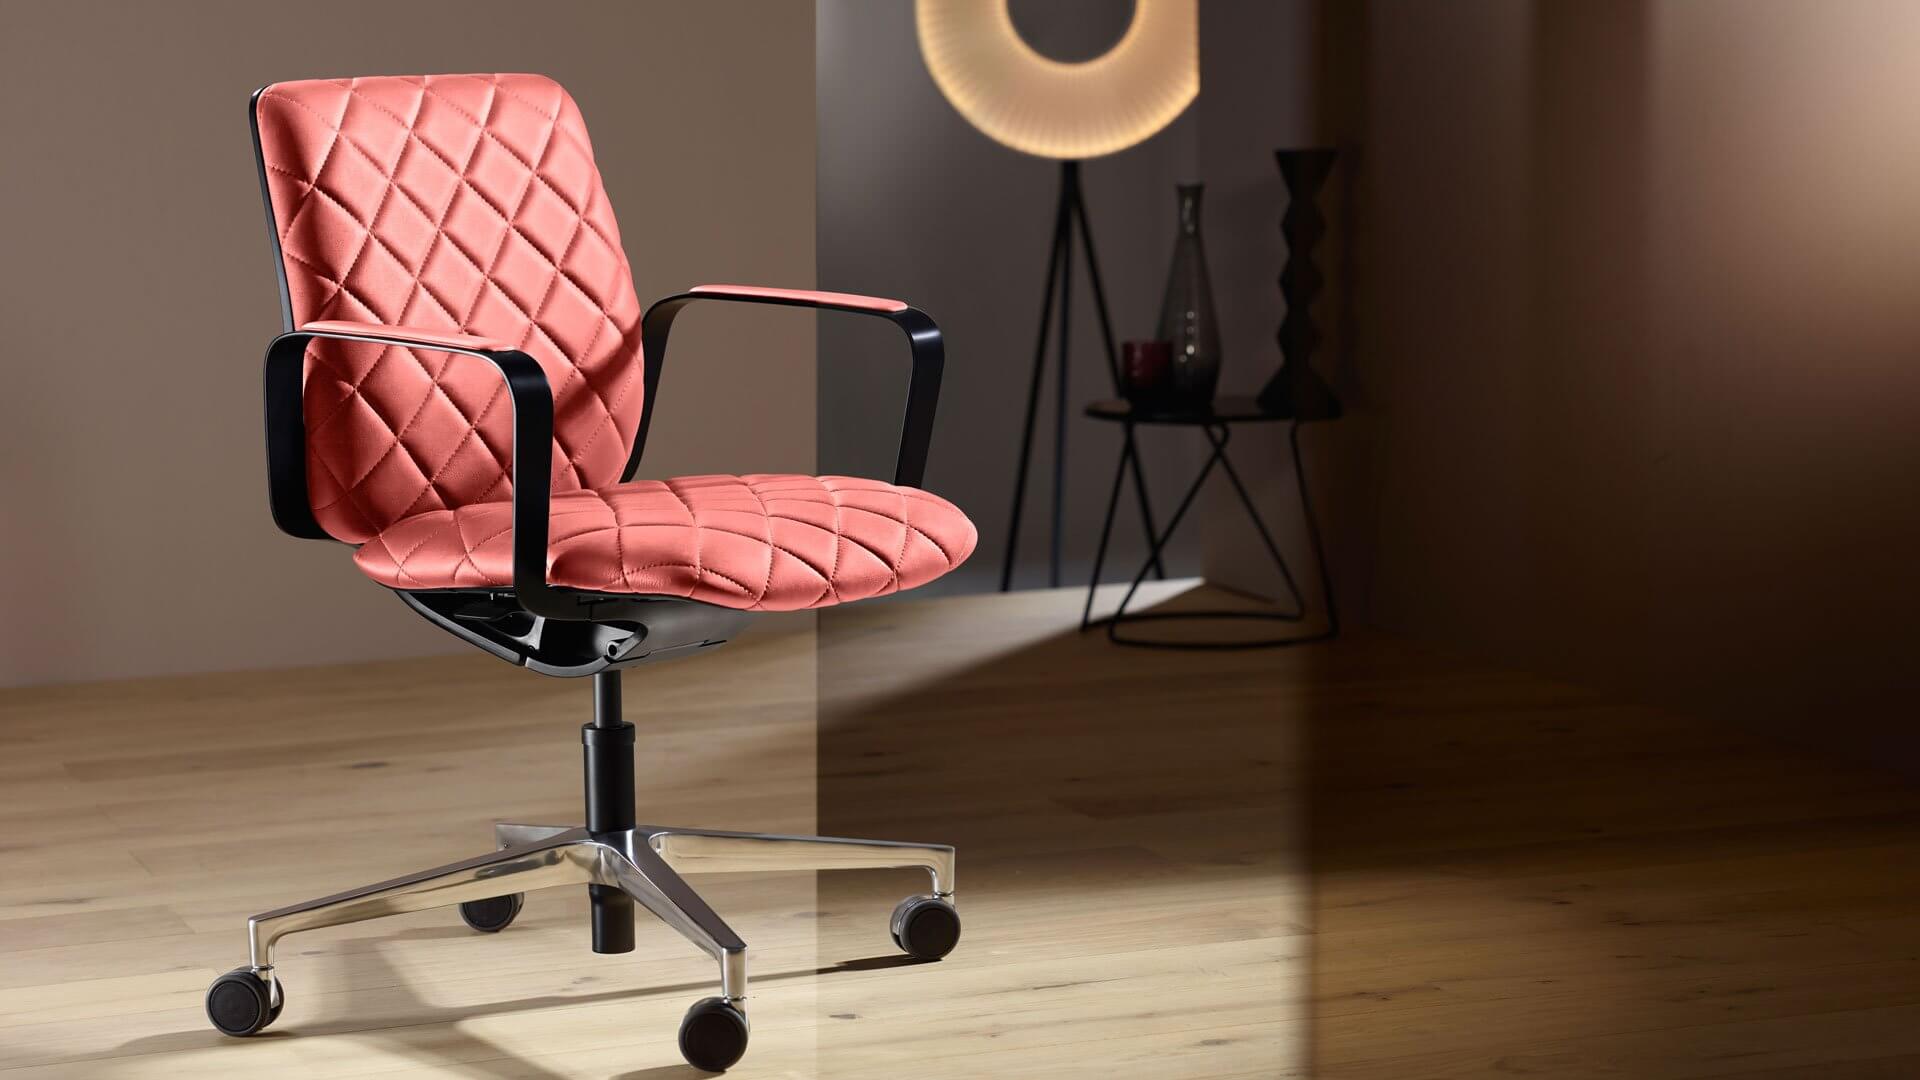 Un fauteuil de bureau ergonomique design pour la maison